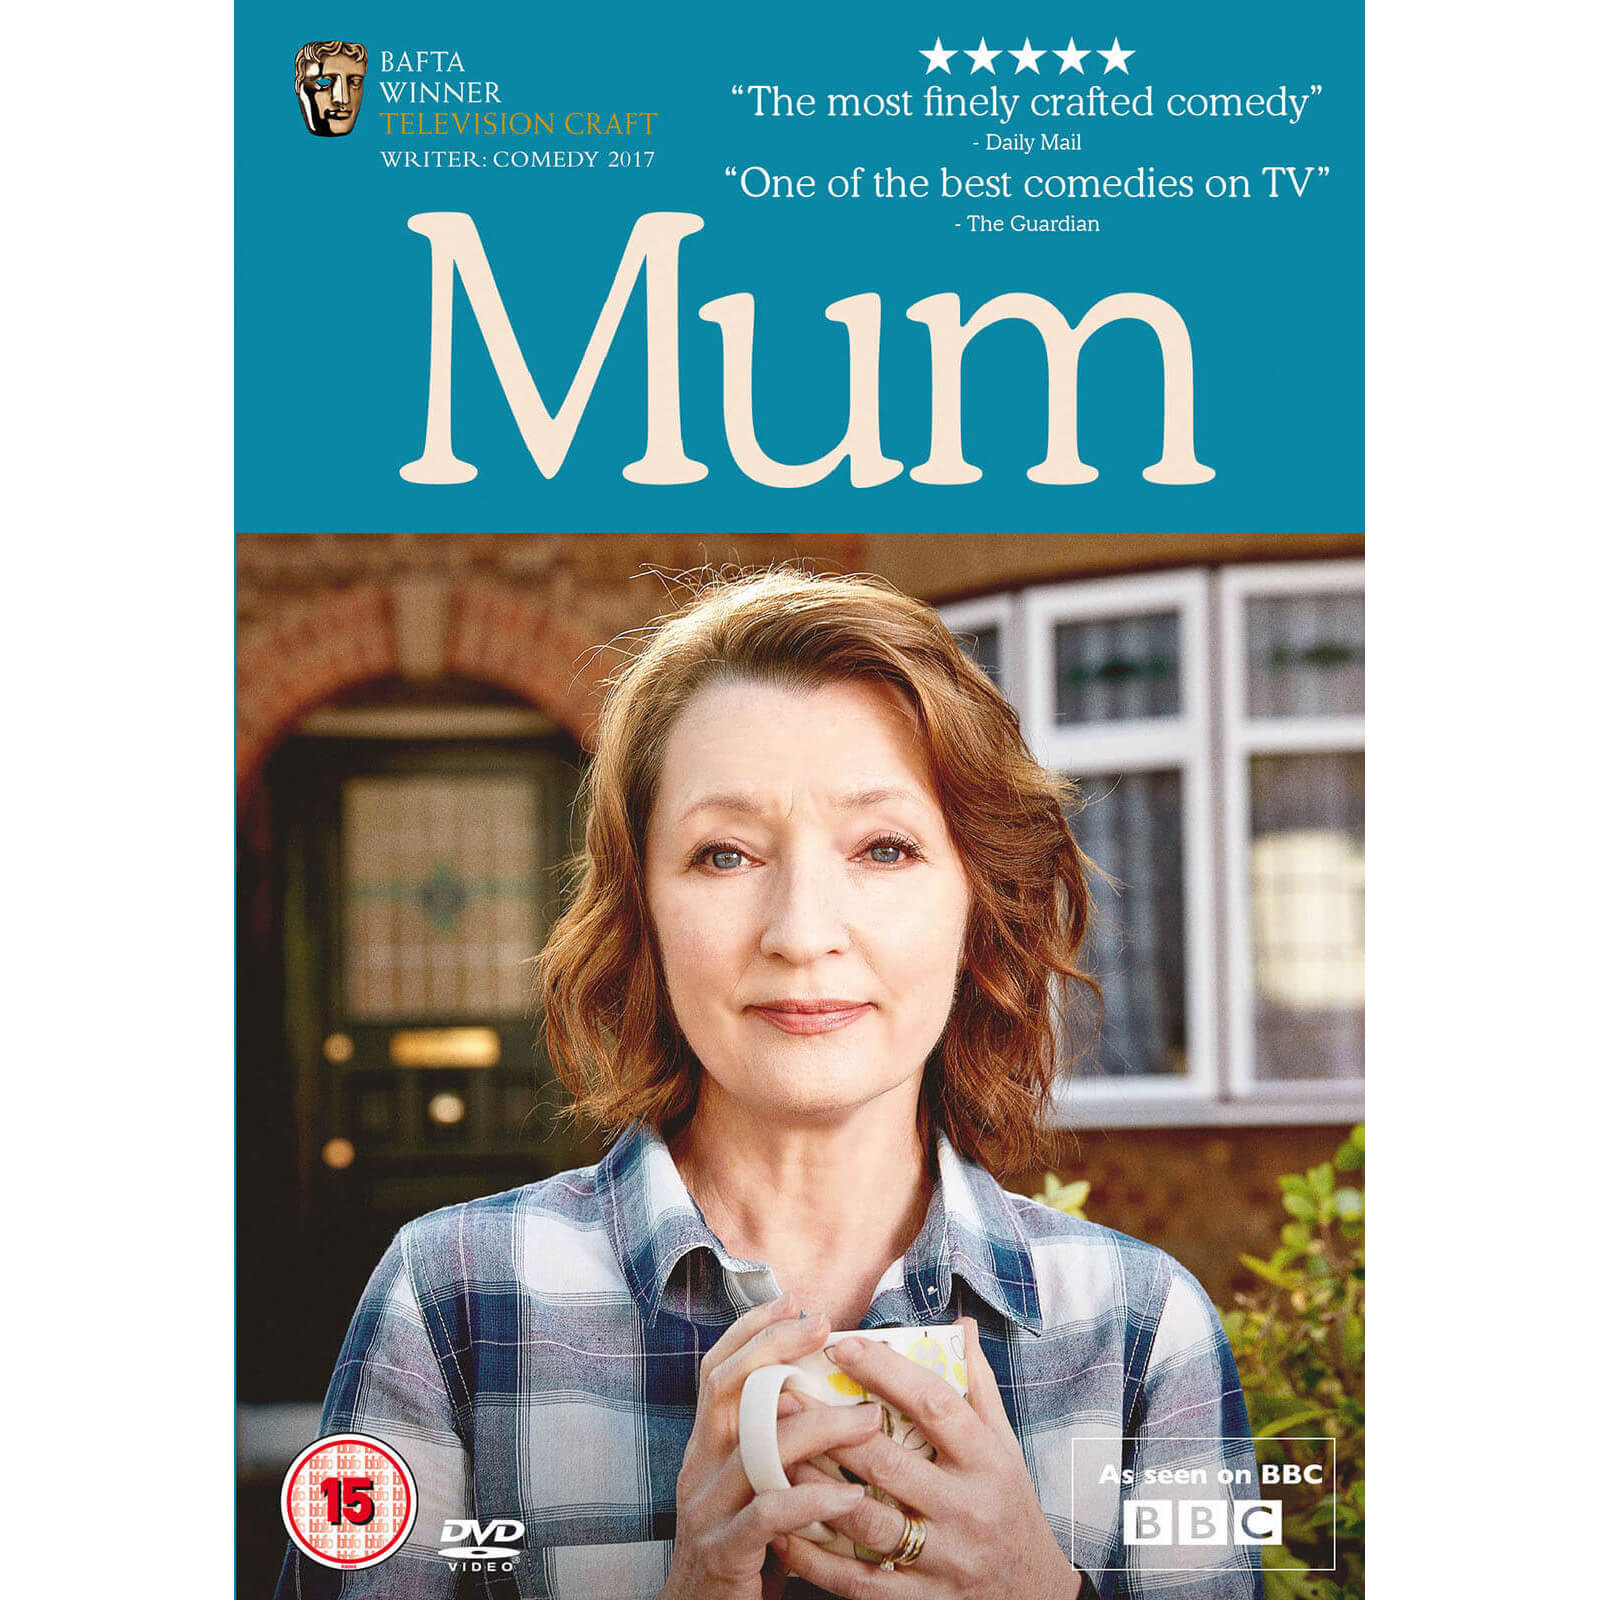 Mum Series 1